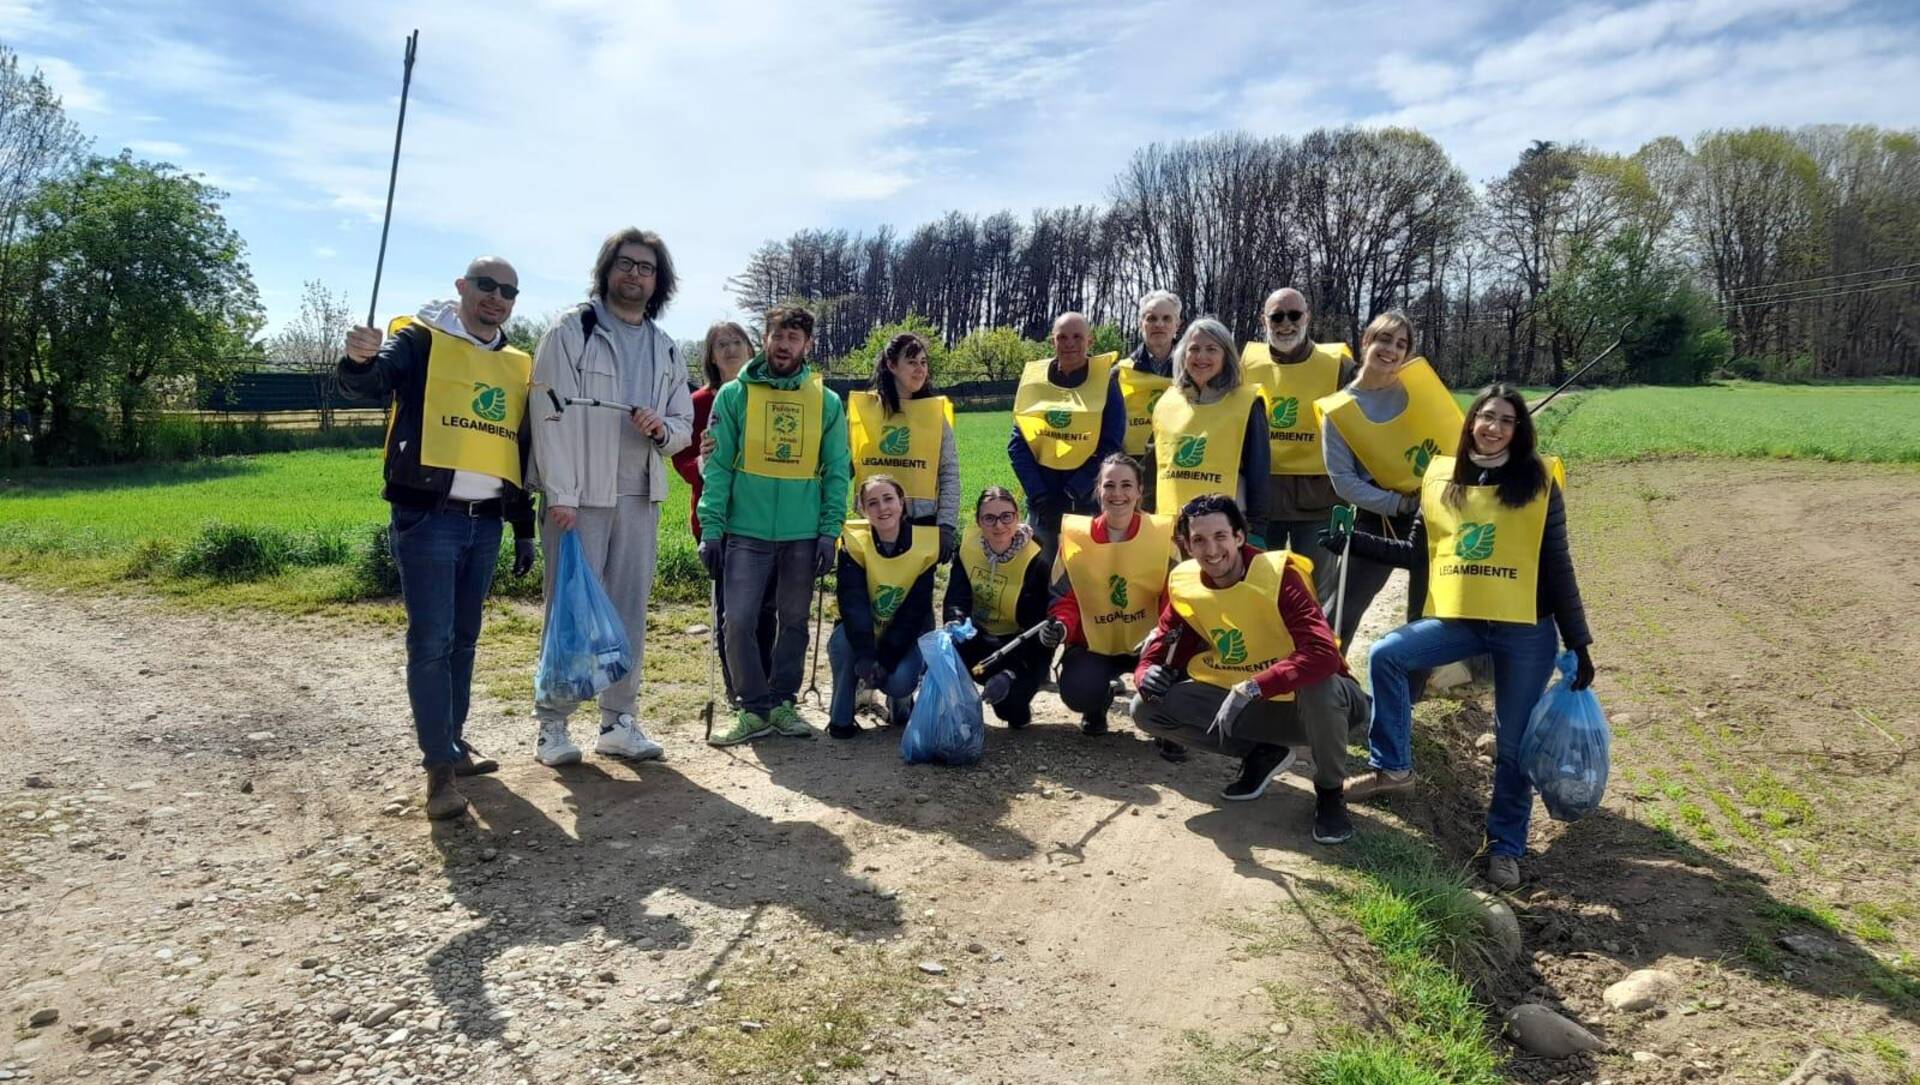 Manichino, bombola, cavi elettrici e tappetti tra i 50 sacchi di rifiuti eliminati da Legambiente tra Saronno sud e la Colombara